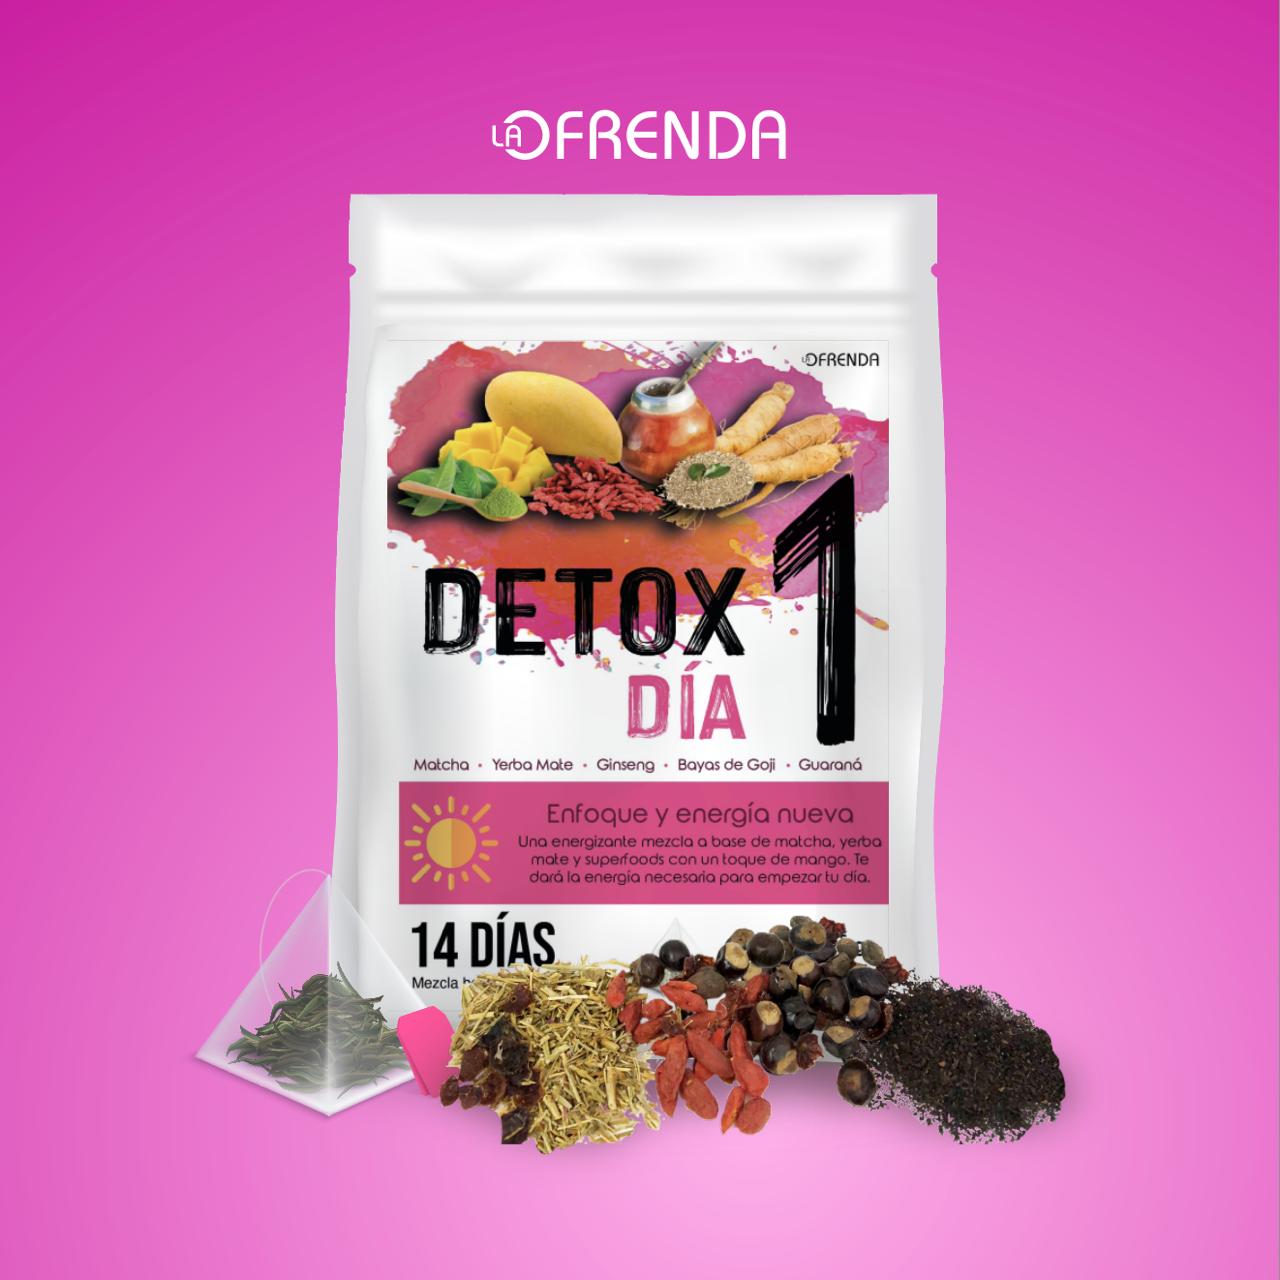 Detox 1-2-3 La OfRENDA